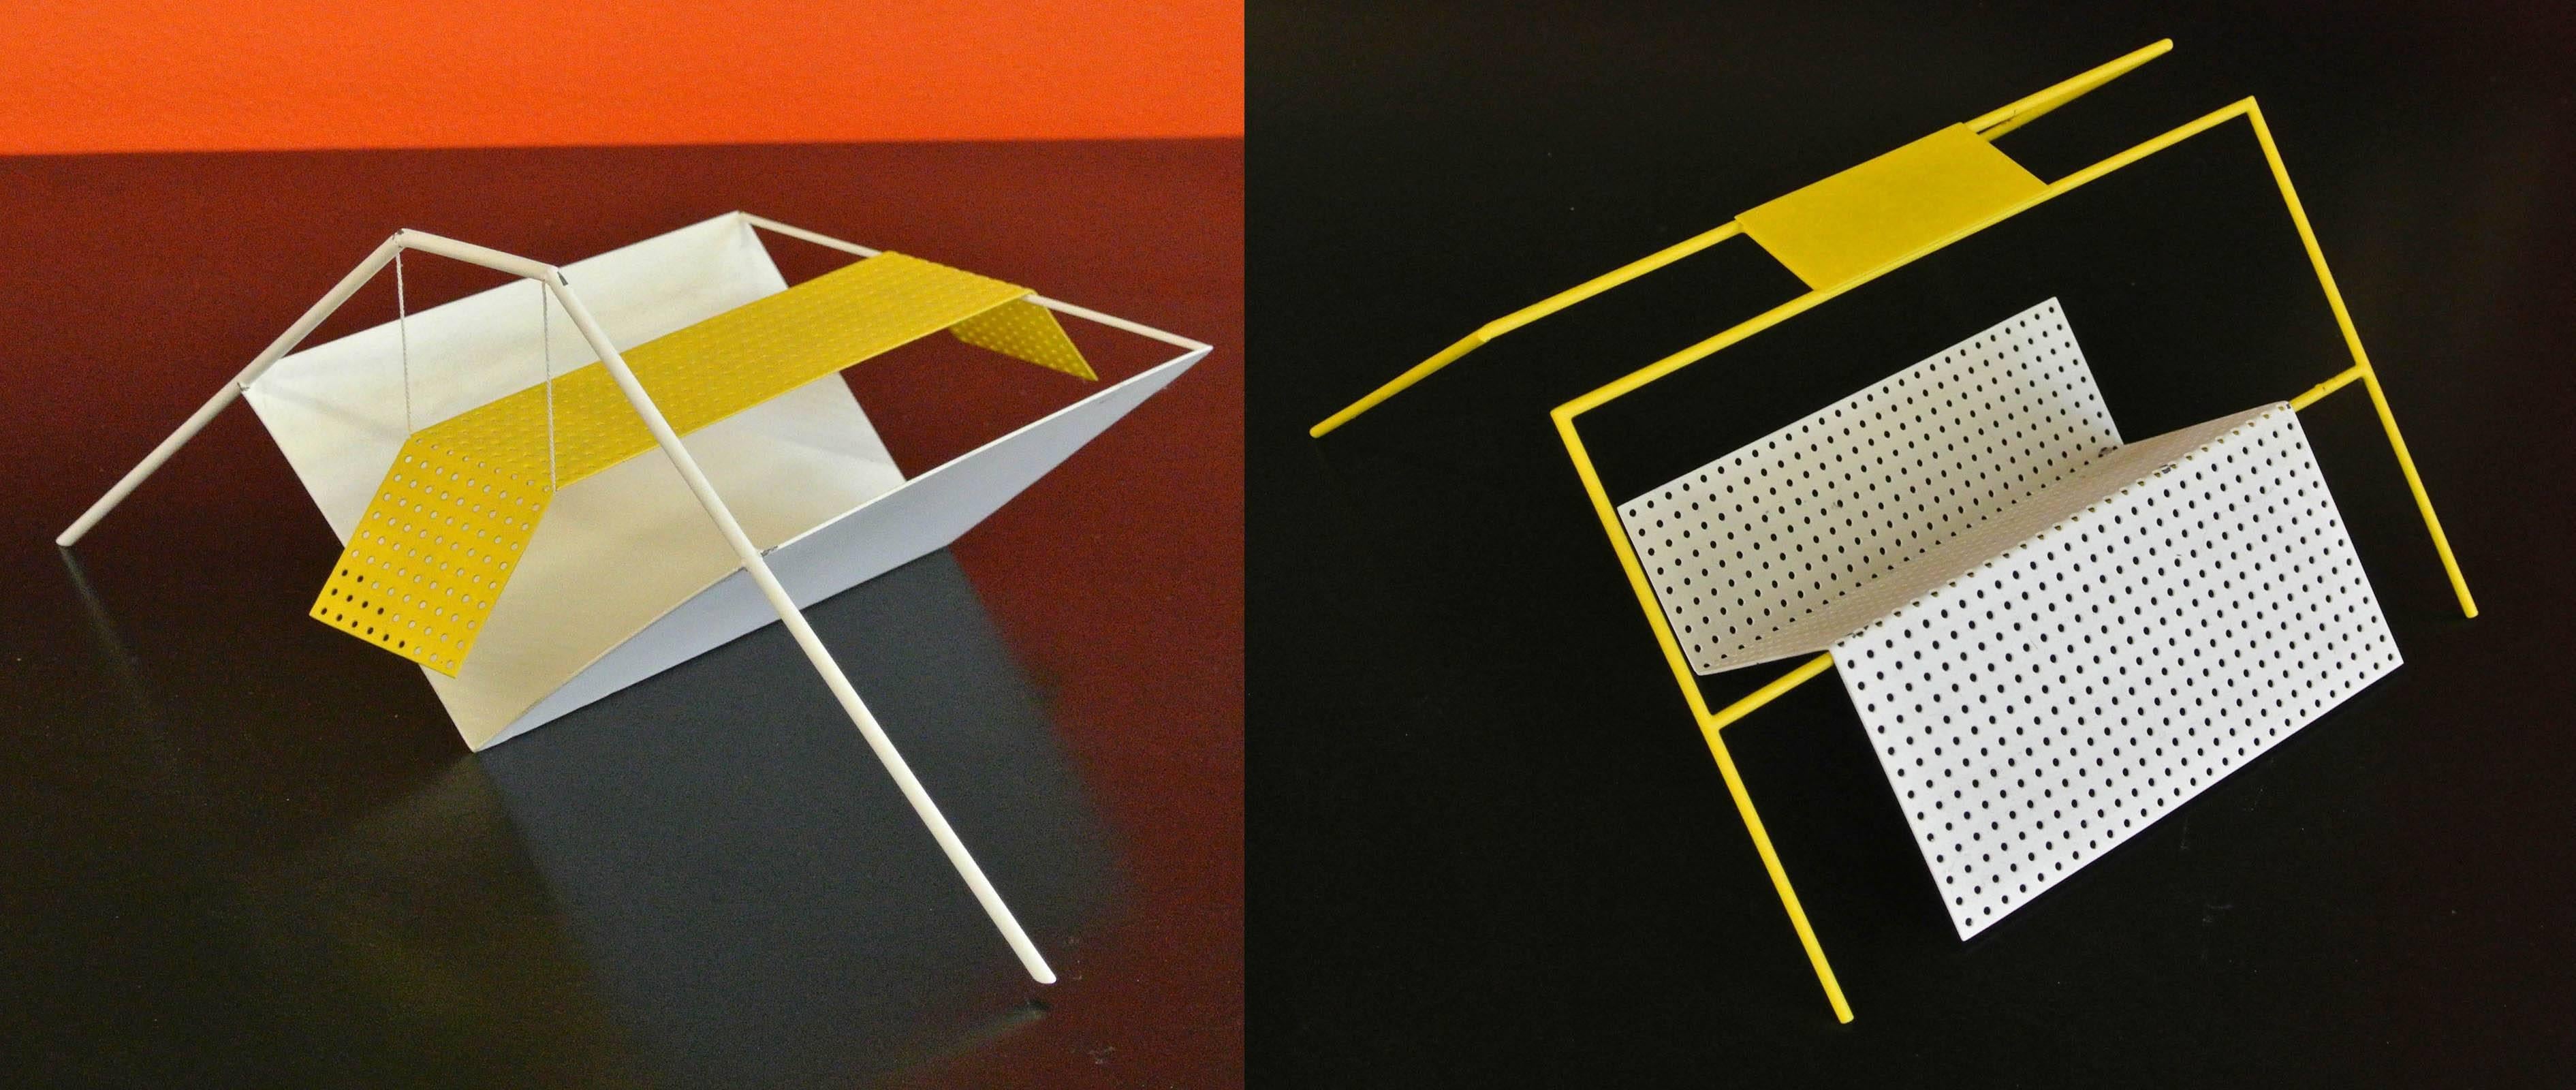 Dre Devens Dutch Constructivist 1980s Metal Architectural Table-Top Sculptures  For Sale 1